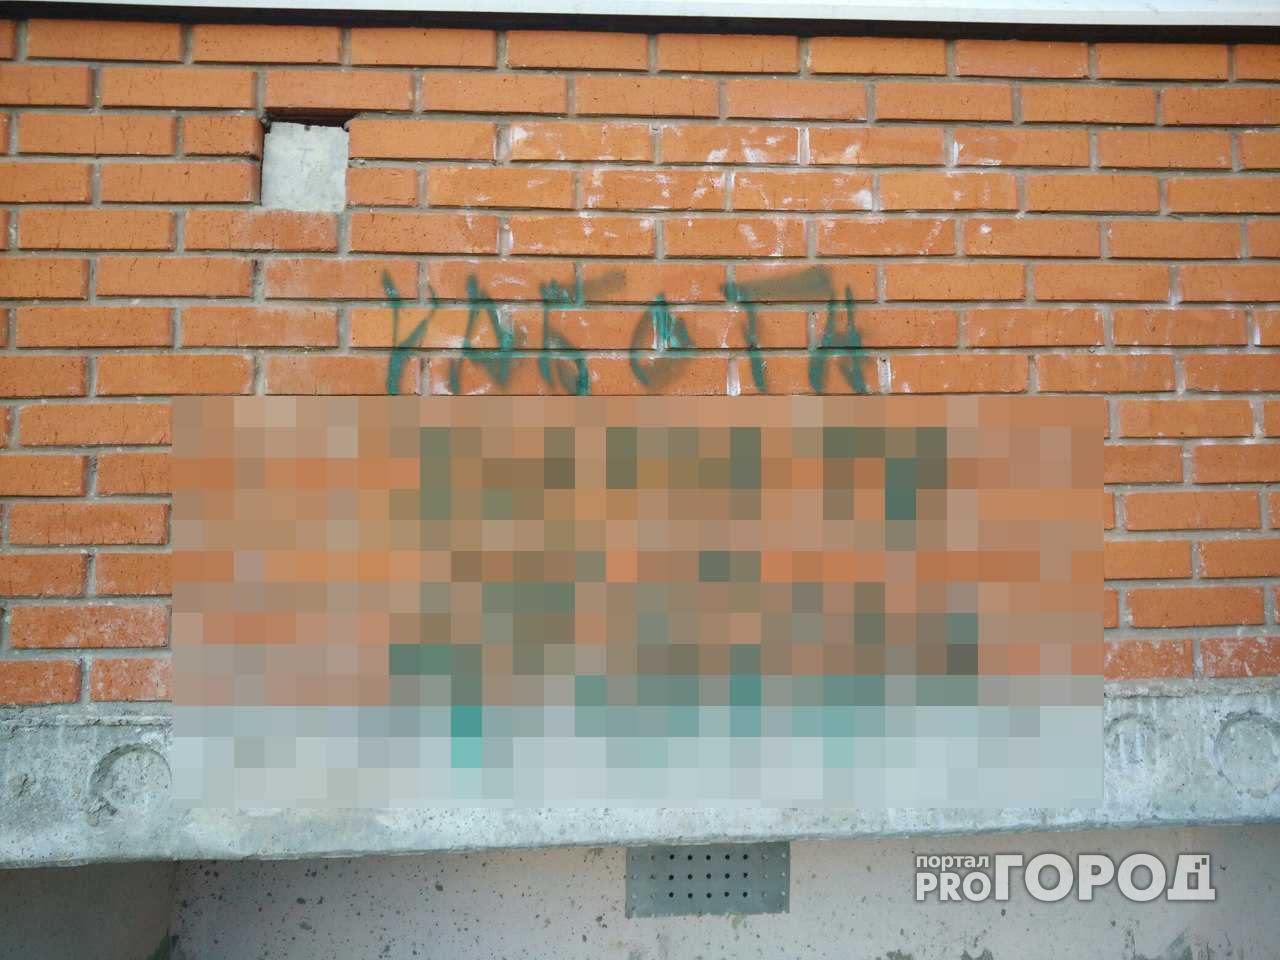 Стены домов в Йошкар-Оле призывают заниматься непристойными вещами?